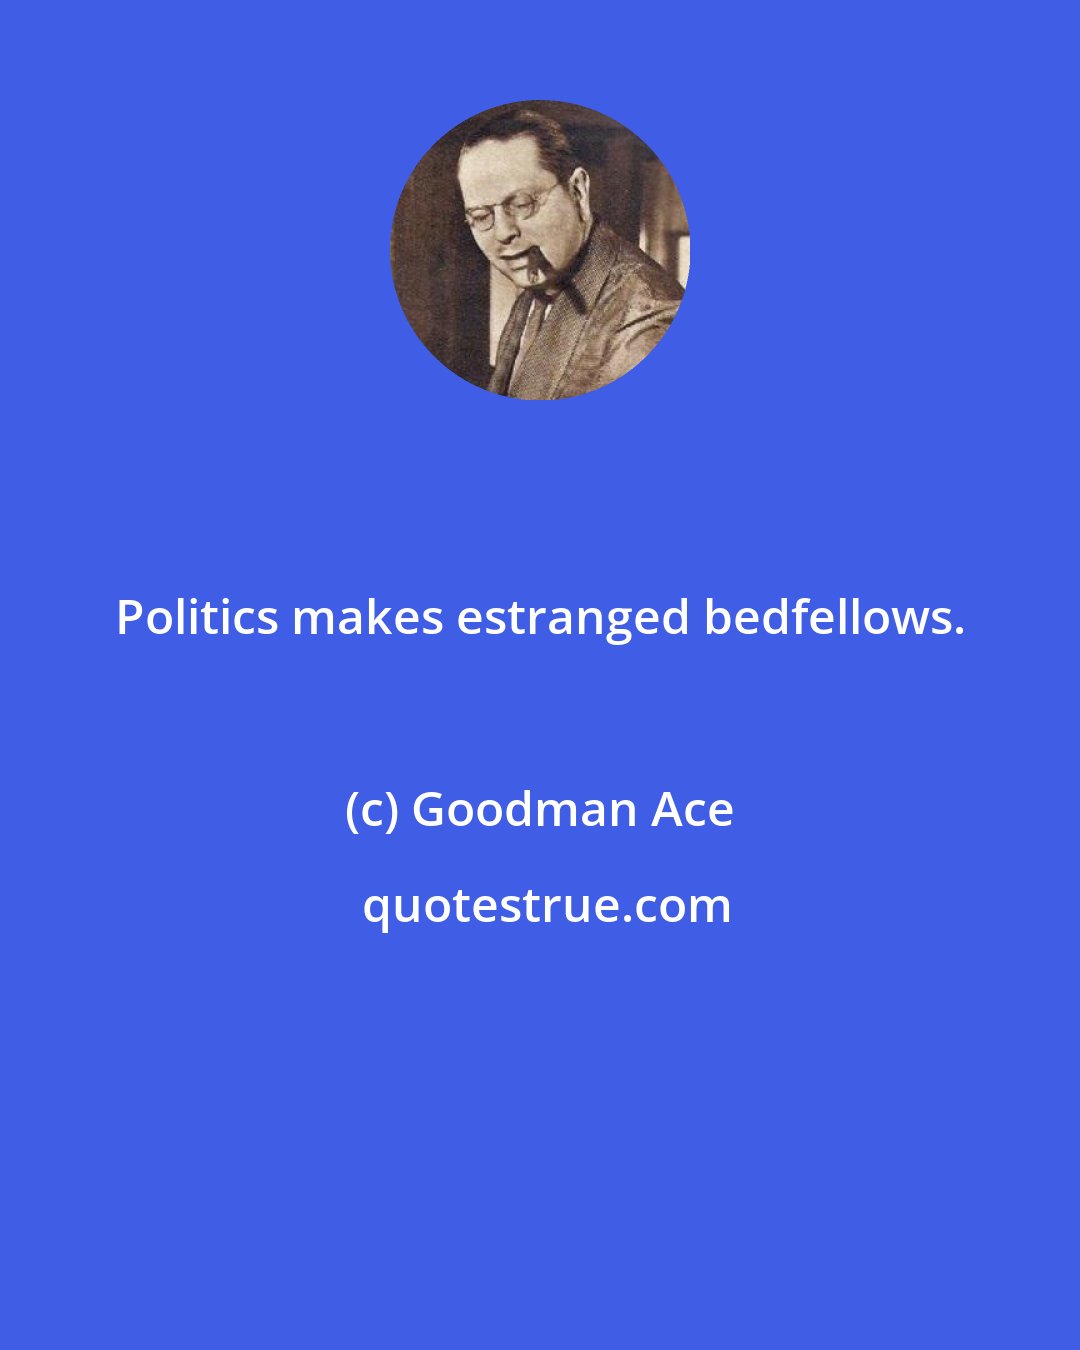 Goodman Ace: Politics makes estranged bedfellows.